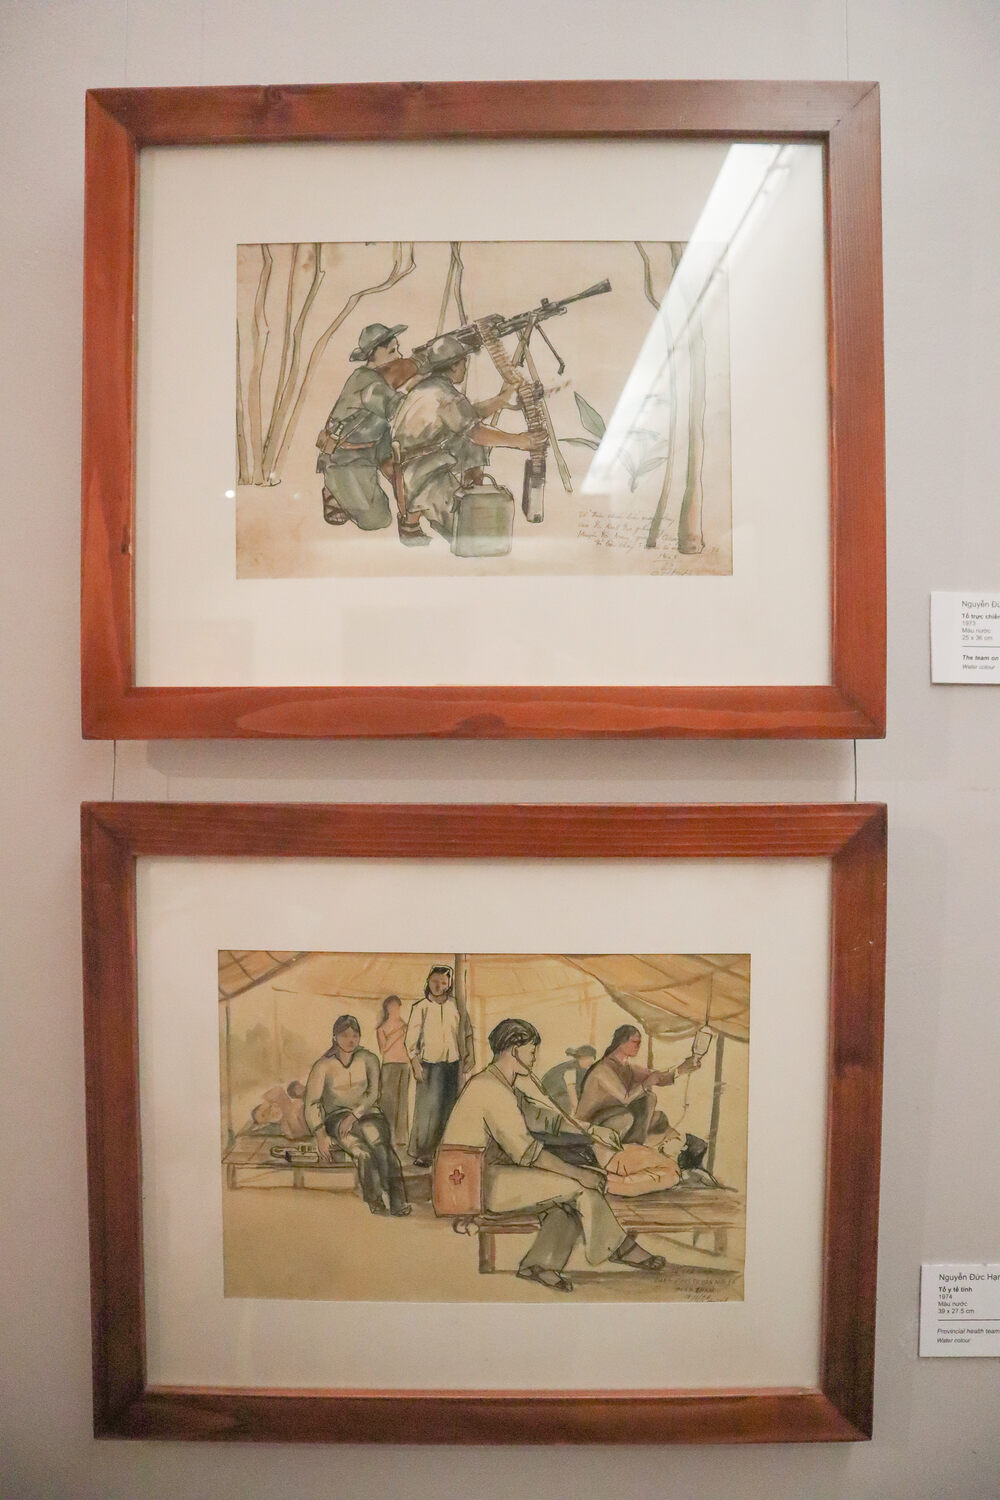 War paintings in Vietnam